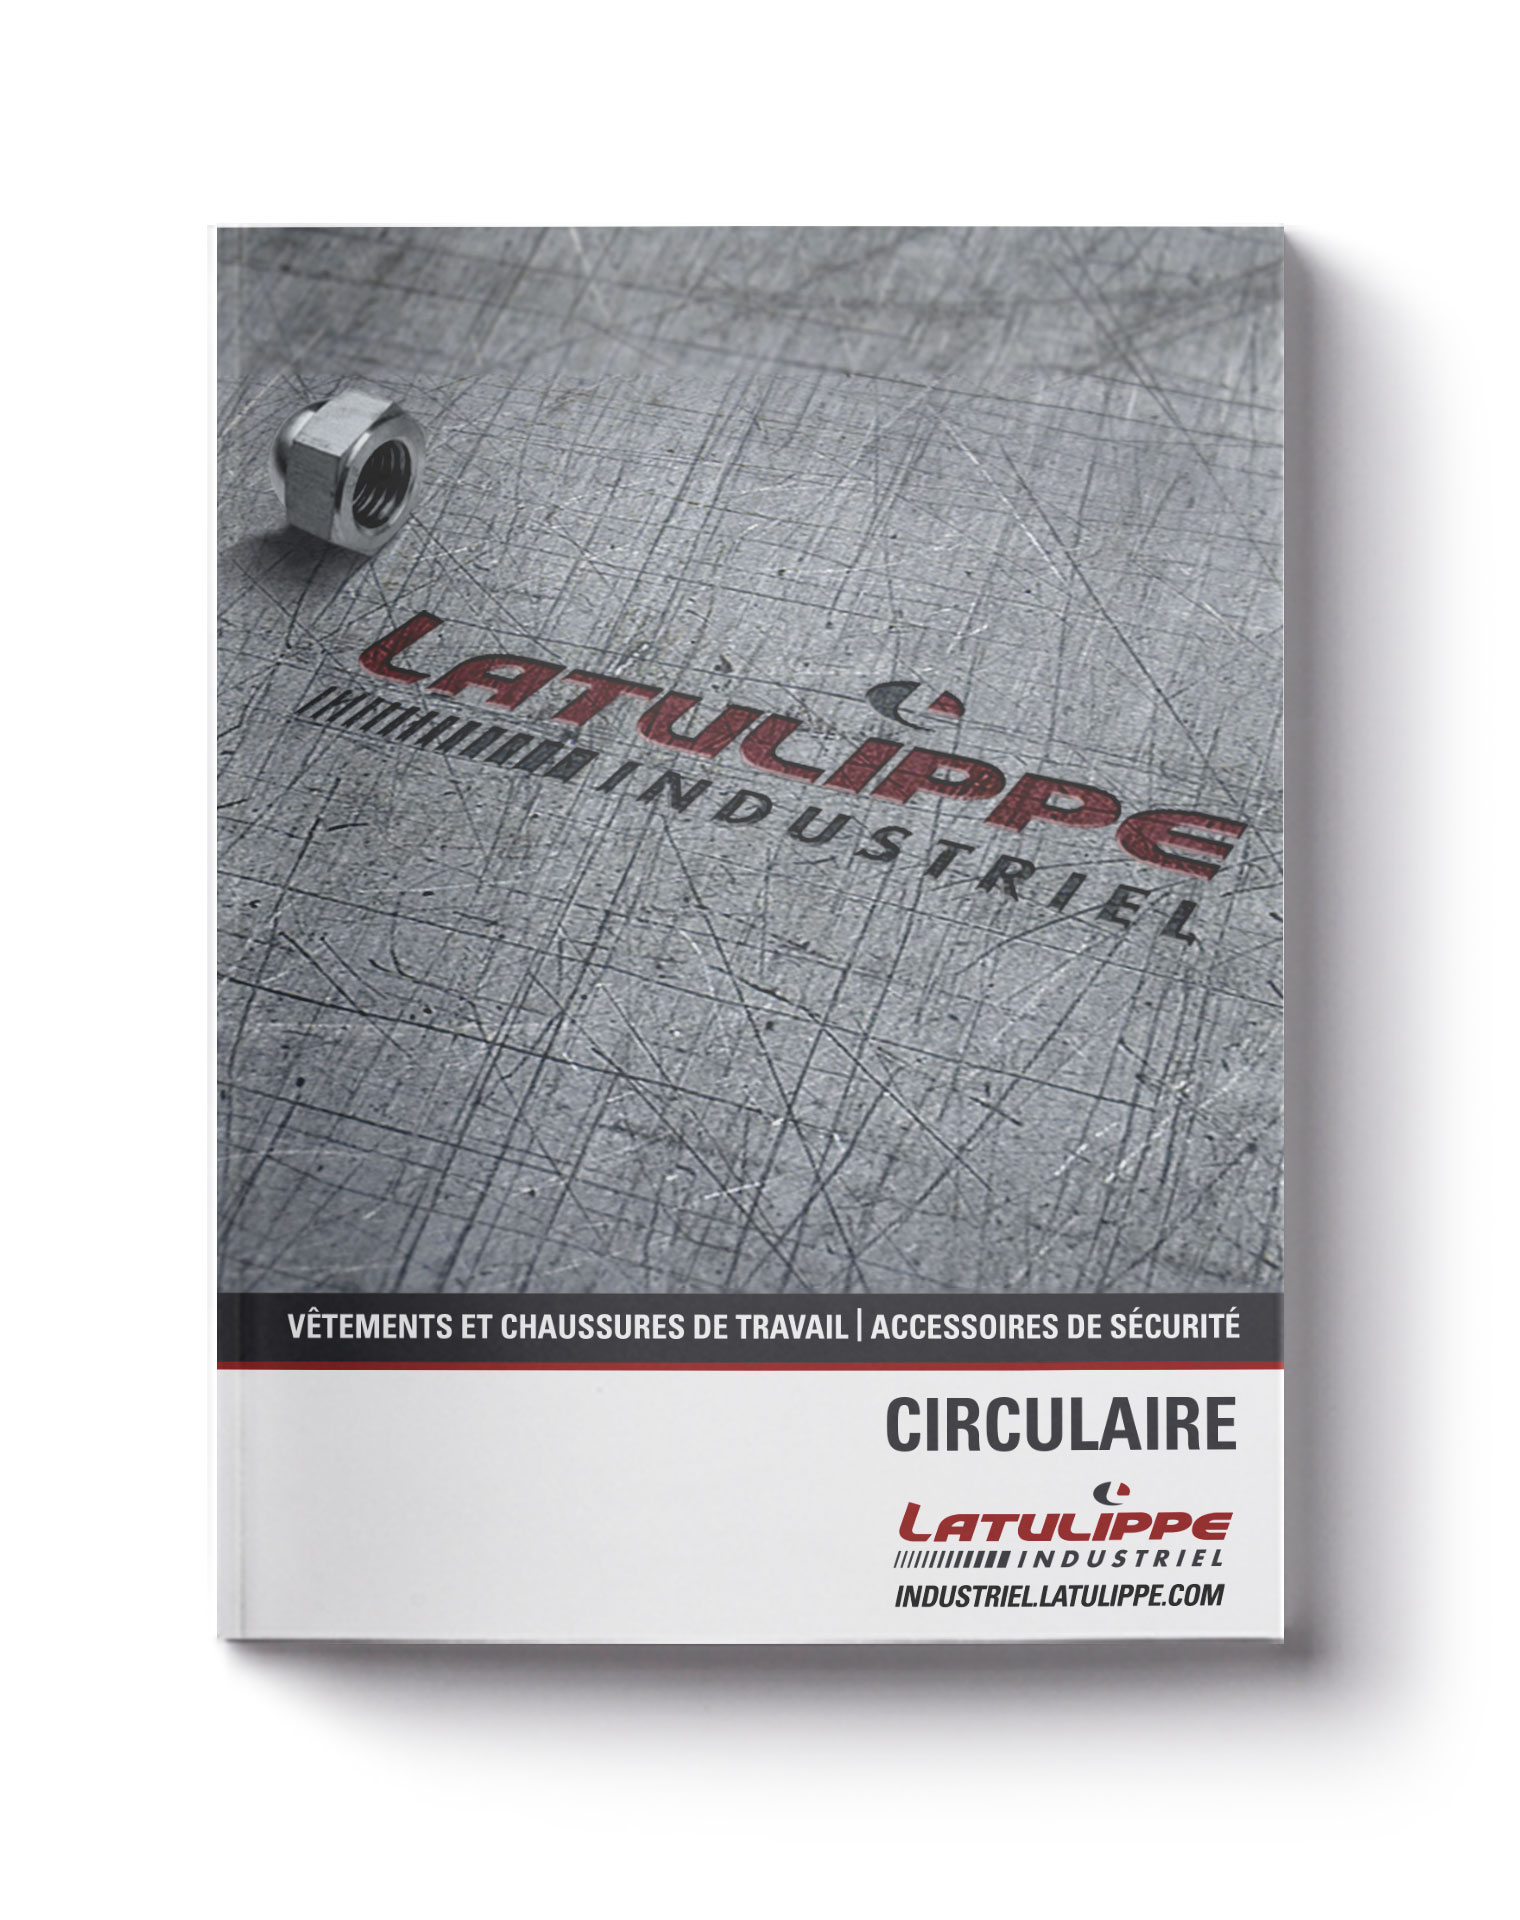 Catalogue Latulippe Industriel Cover édition 2016-2017